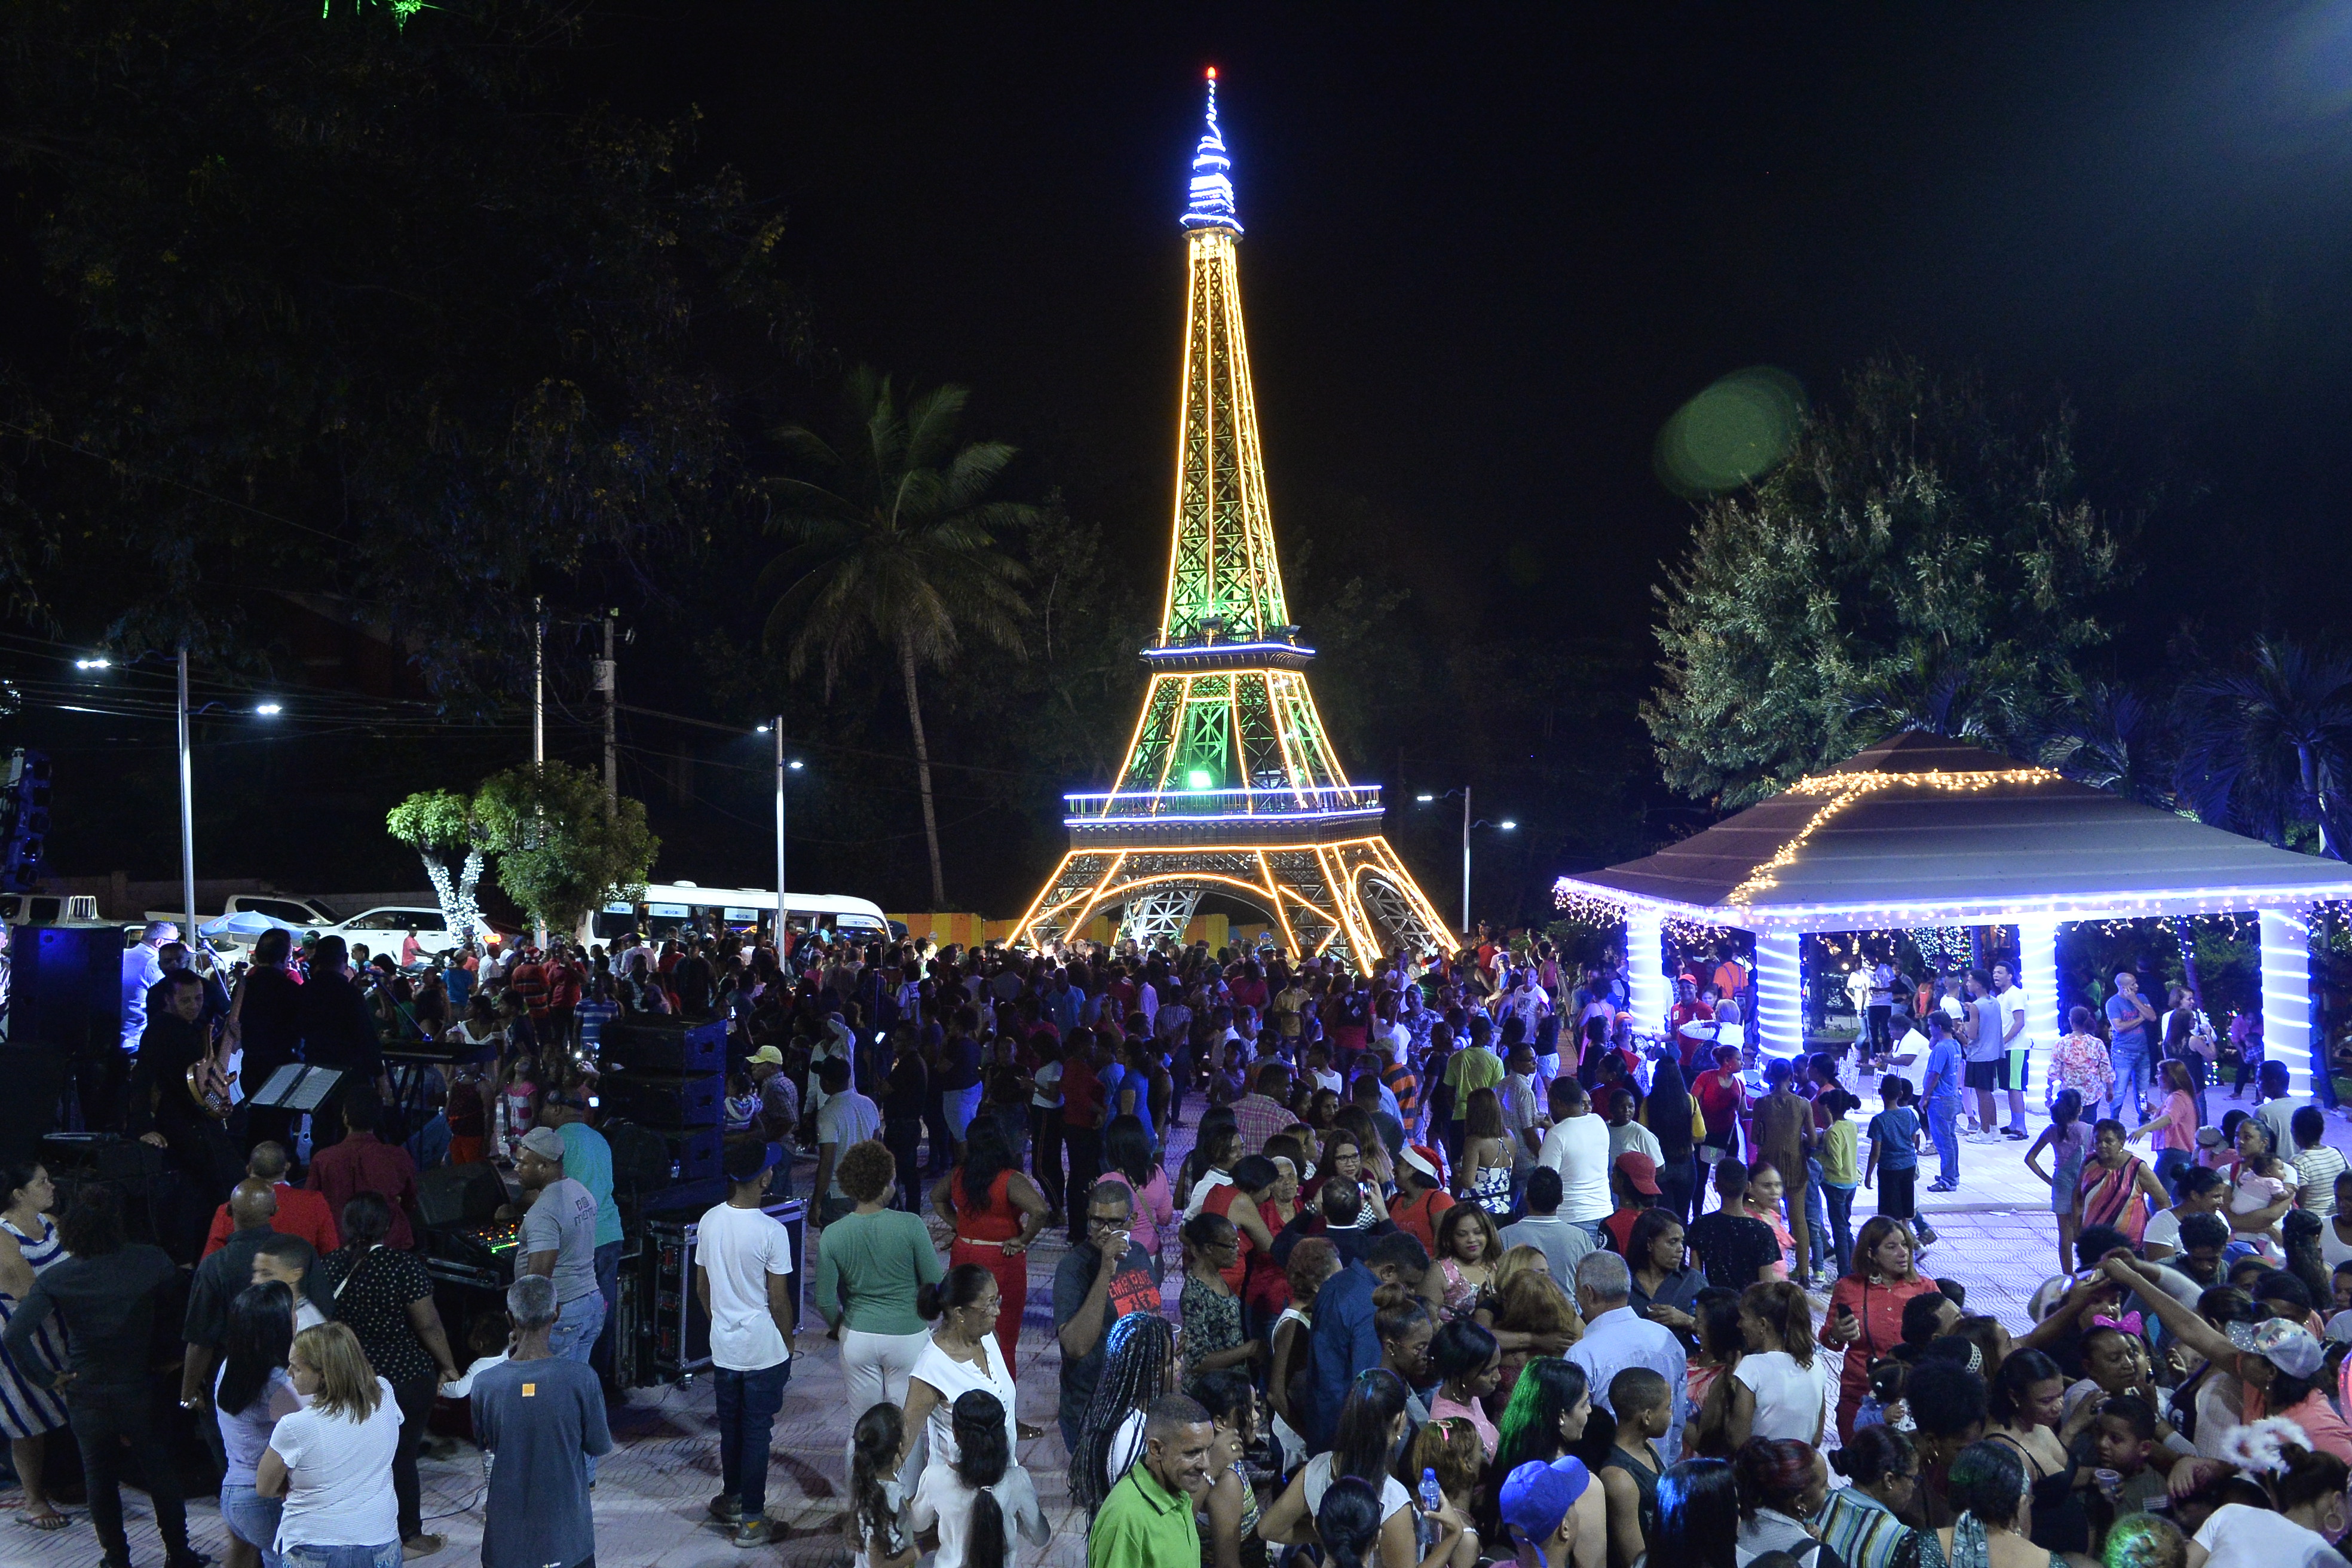 Inauguración de árbol temático “Torre Eiffel” en Las Caobas